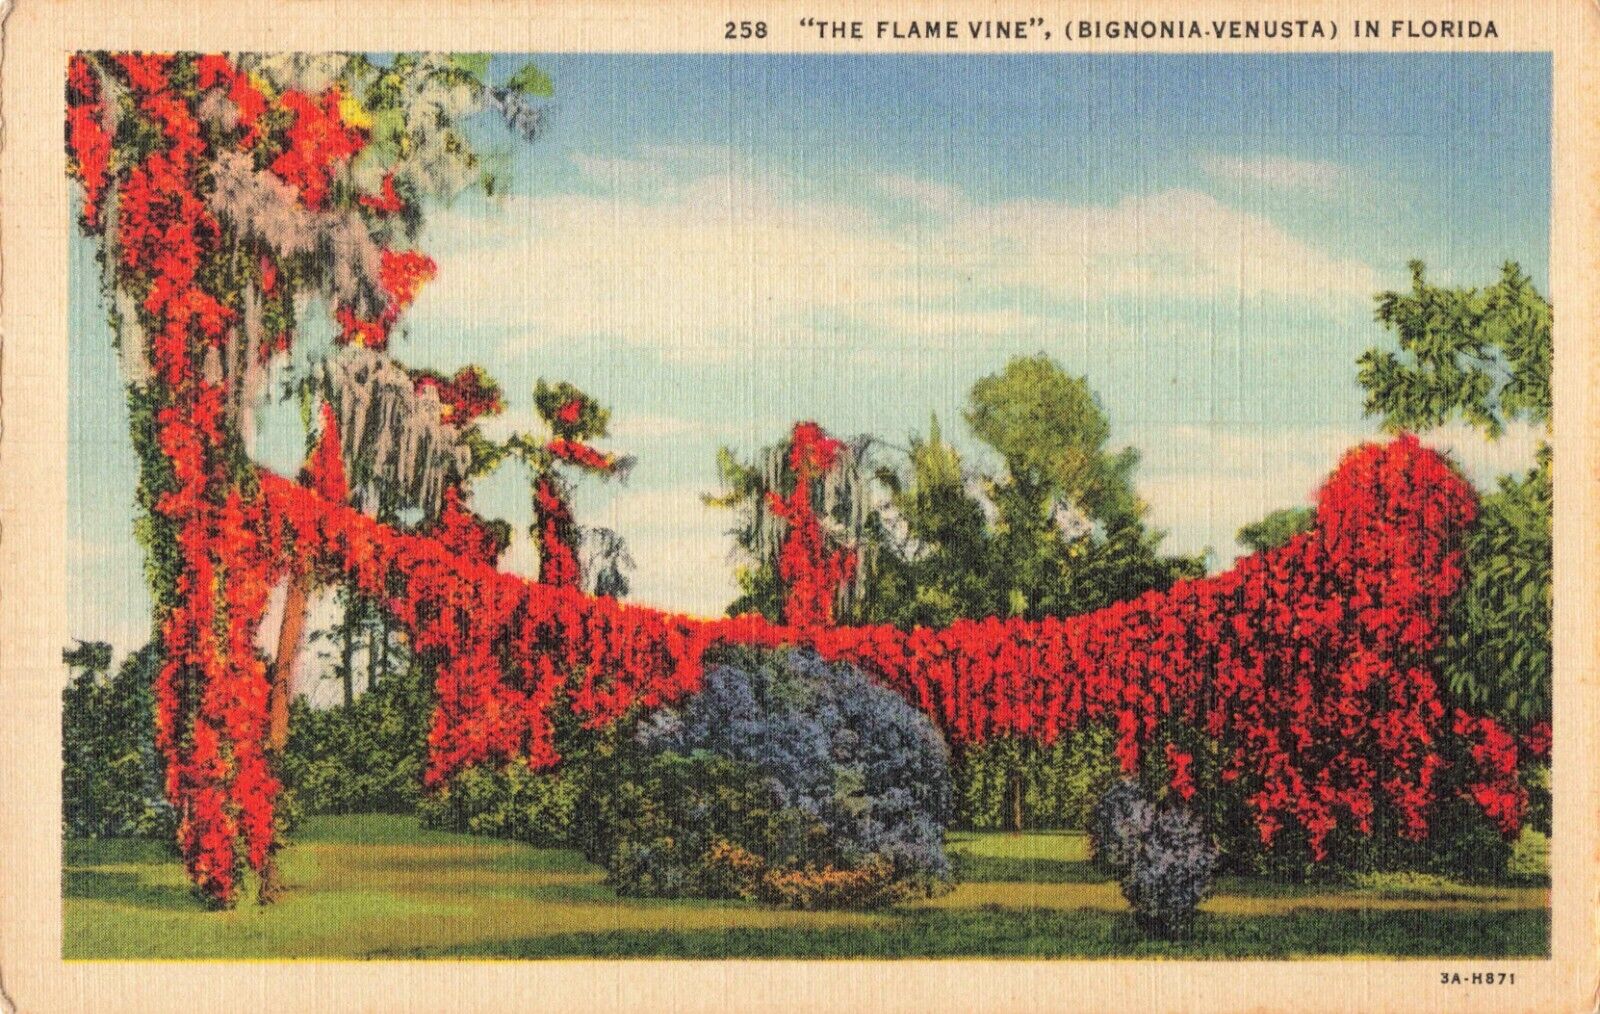 Miami FL Florida, Colorful Flame Vine, Bignonia Venusta, Poem, Vintage Postcard